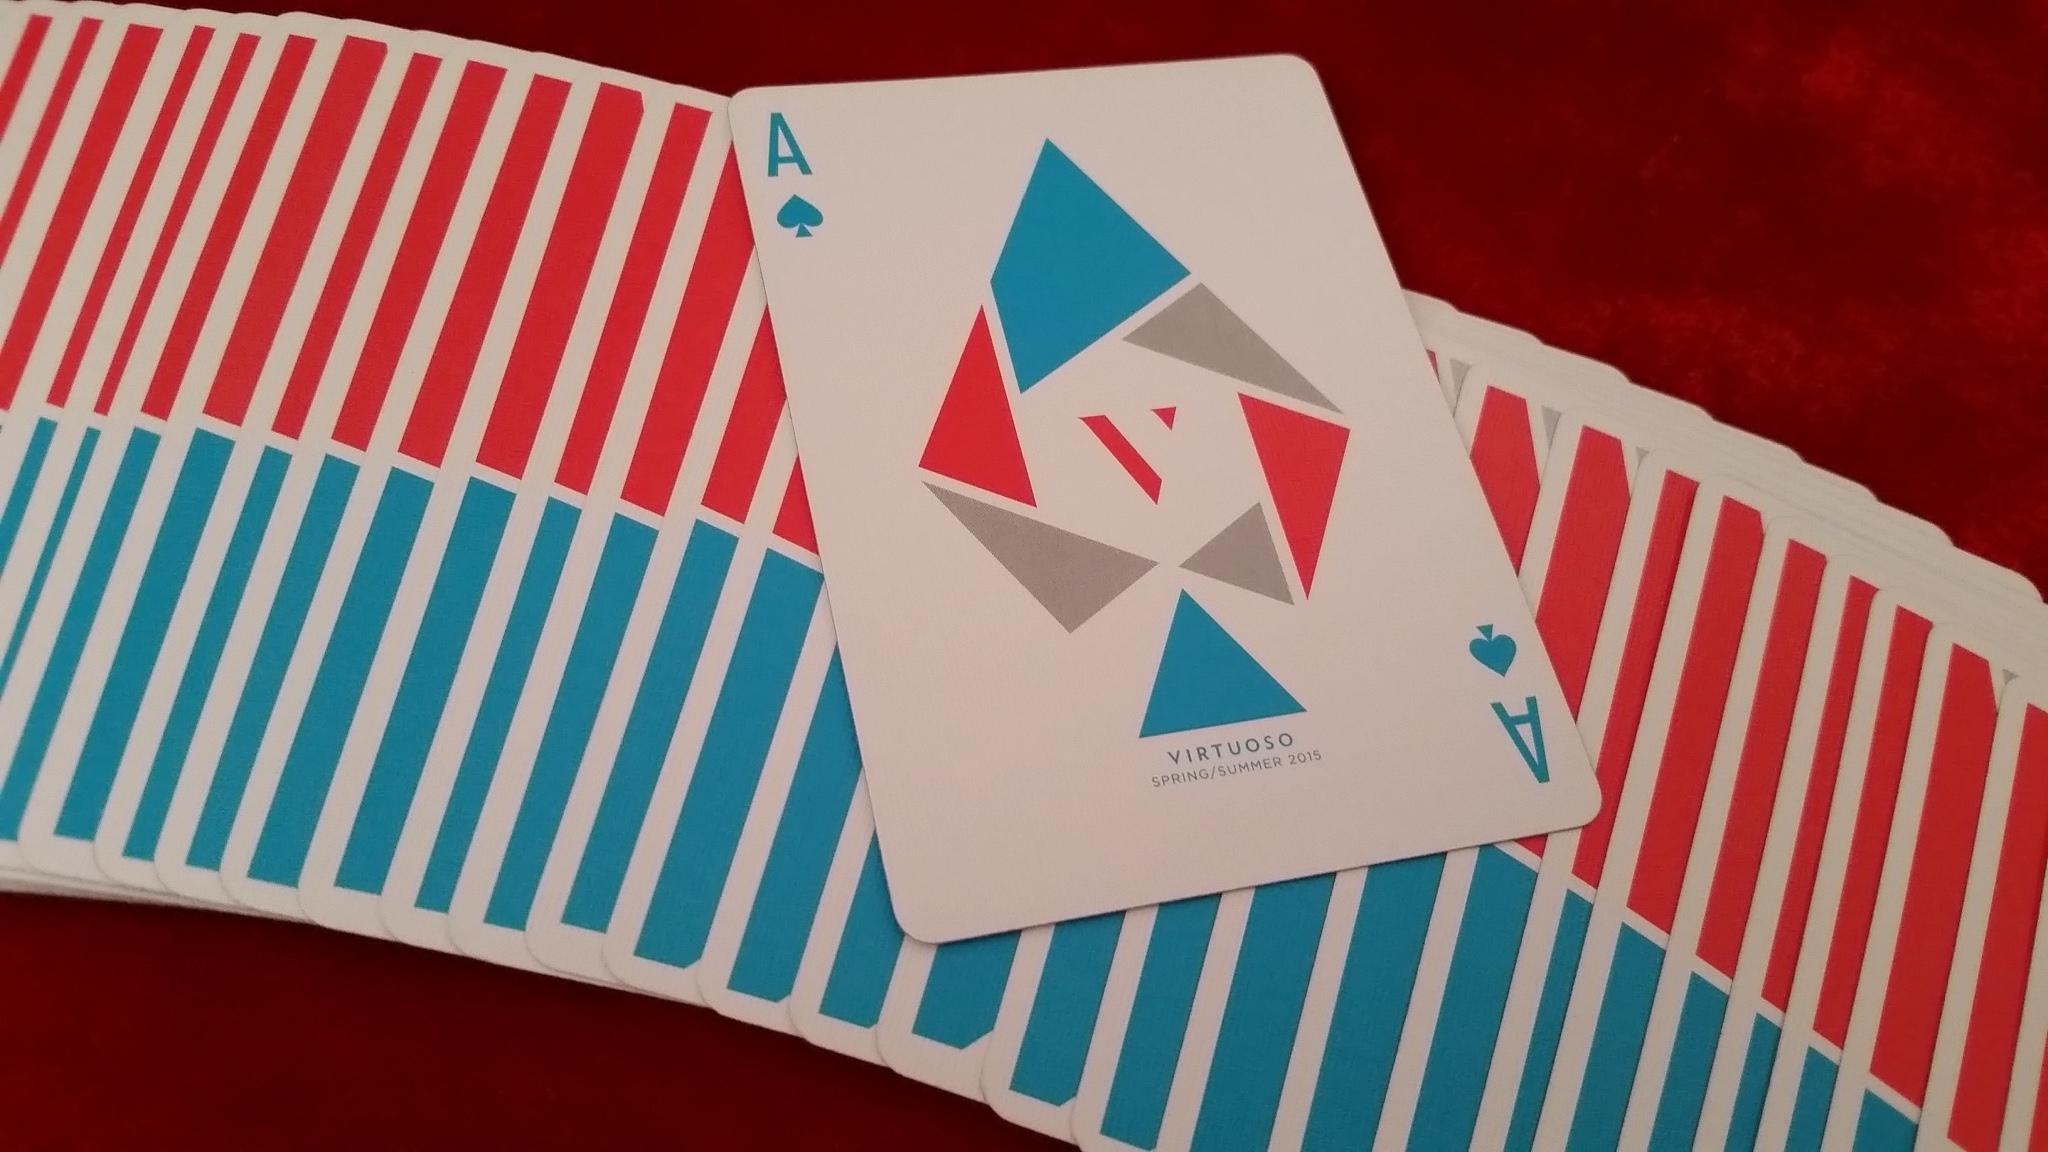 S/S 2015 Virtuoso Playing Cards | RamblerKudos